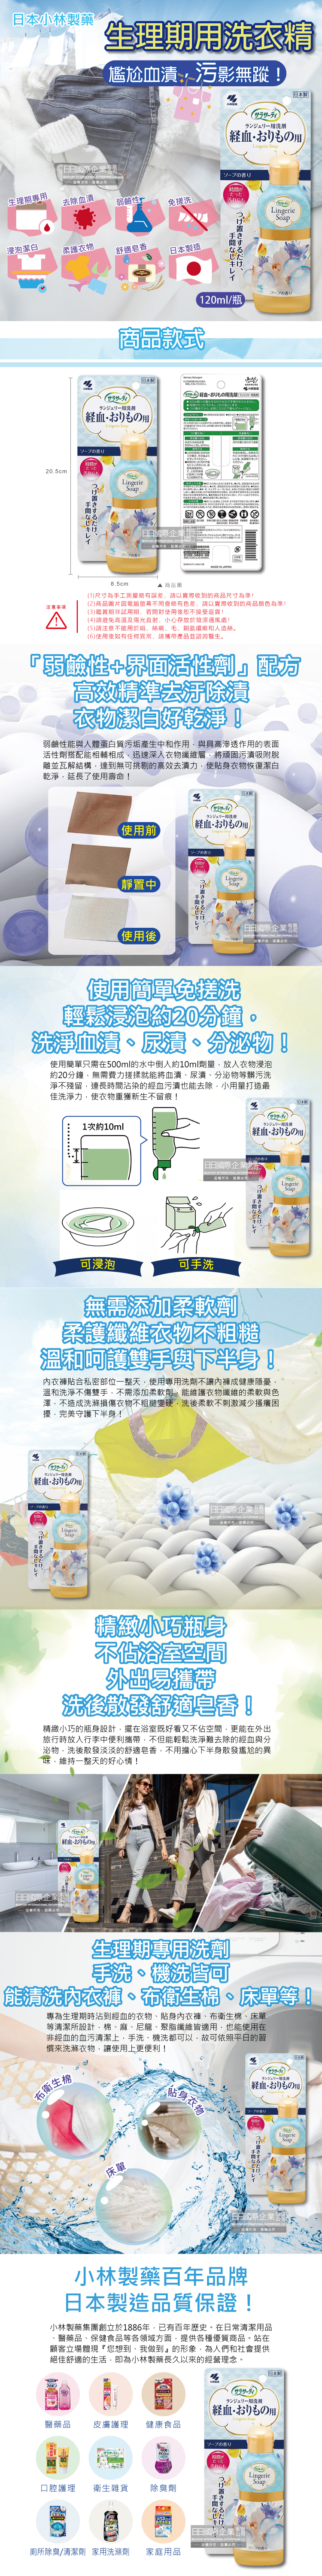 (清潔-衣物)日本小林製藥-生理期專用衣物清潔劑120ml瓶裝介紹圖